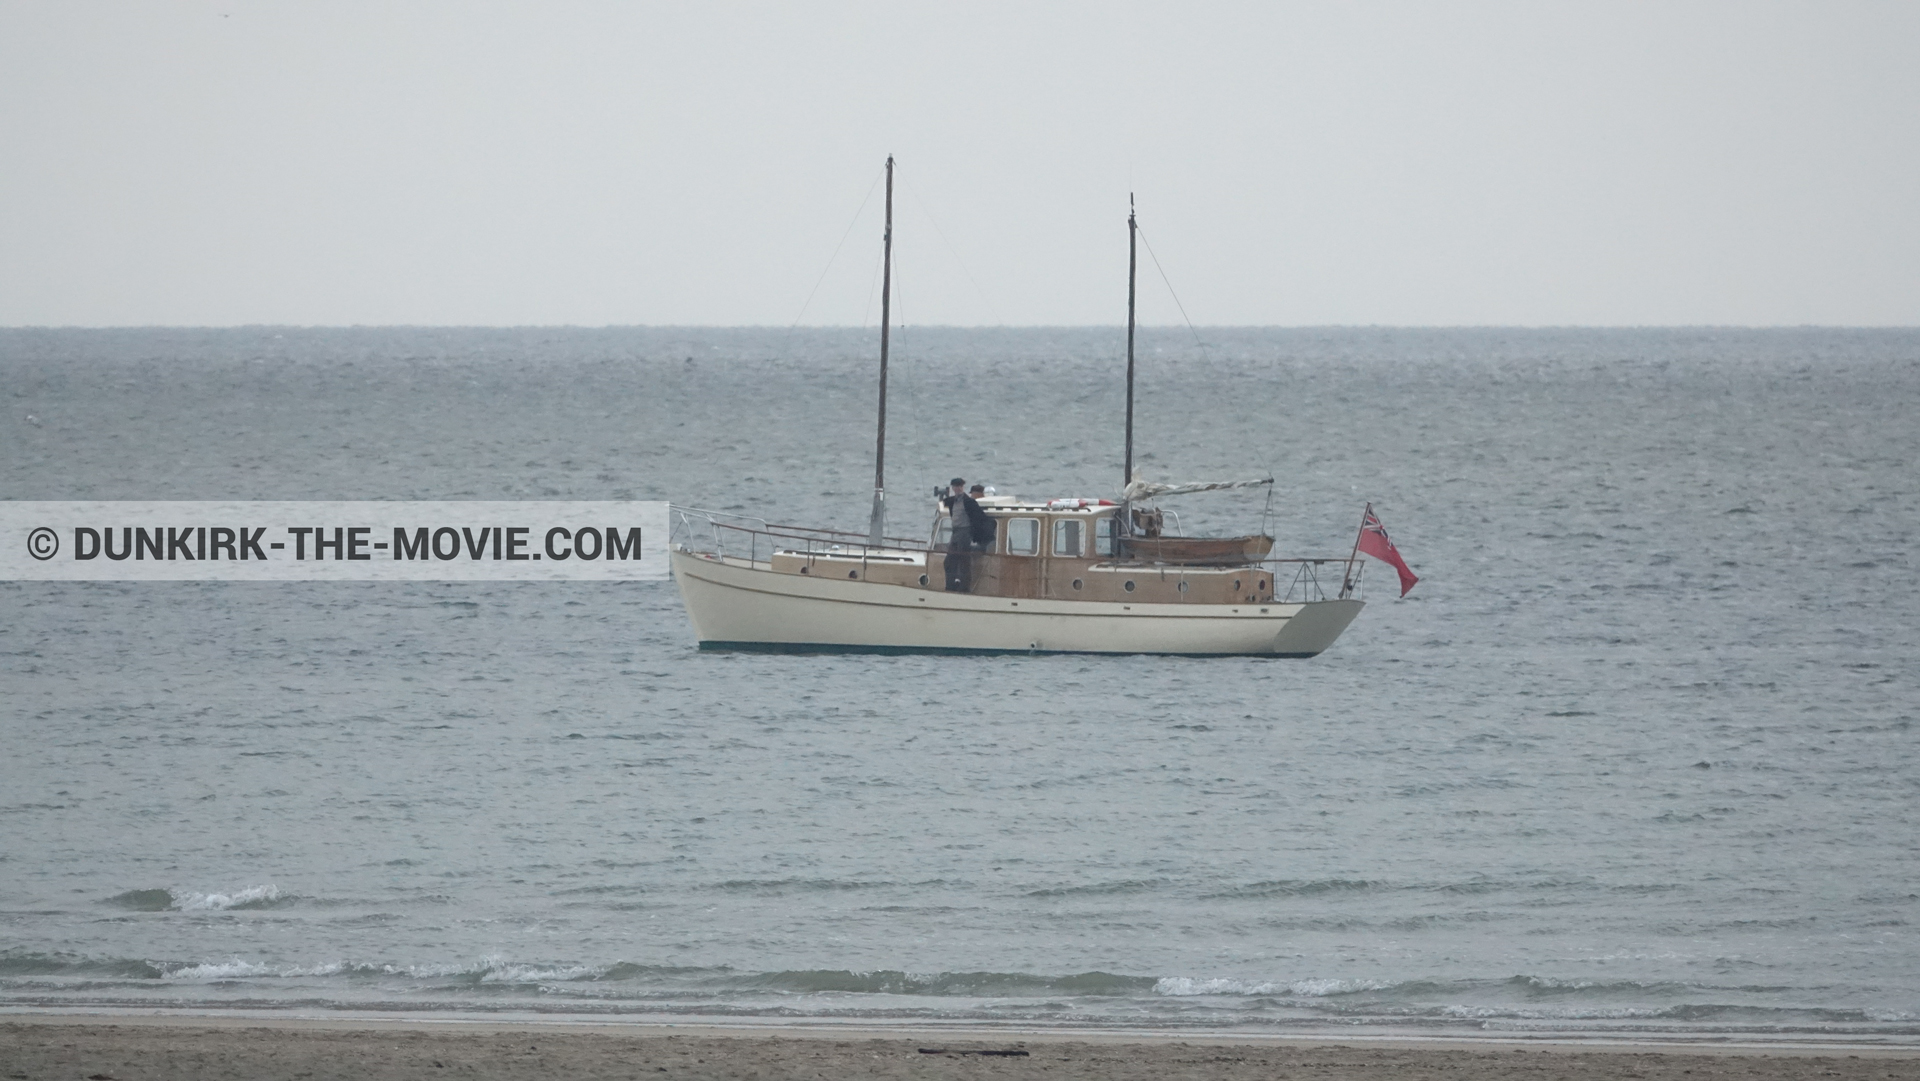 Fotos con playa, mares calma, extras, cielo gris, barco,  durante el rodaje de la película Dunkerque de Nolan